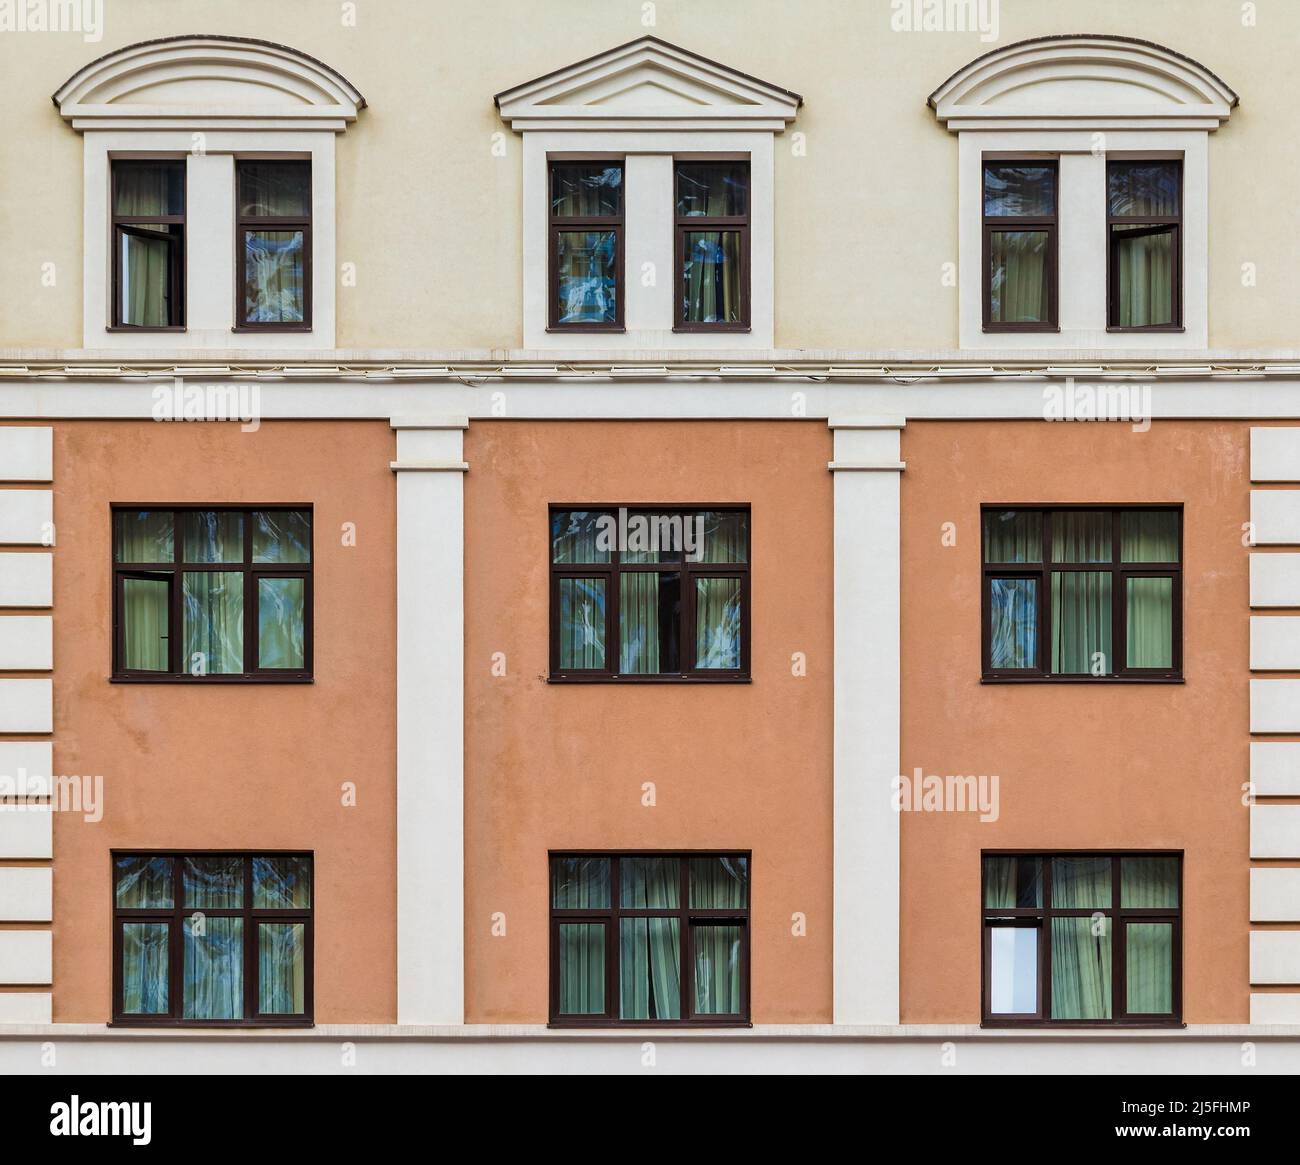 De nombreuses fenêtres d'affilée sur la façade de l'immeuble moderne d'appartements urbains vue de face, Krasnaya Polyana, Sotchi, Krasnodar Krai, Russie Banque D'Images